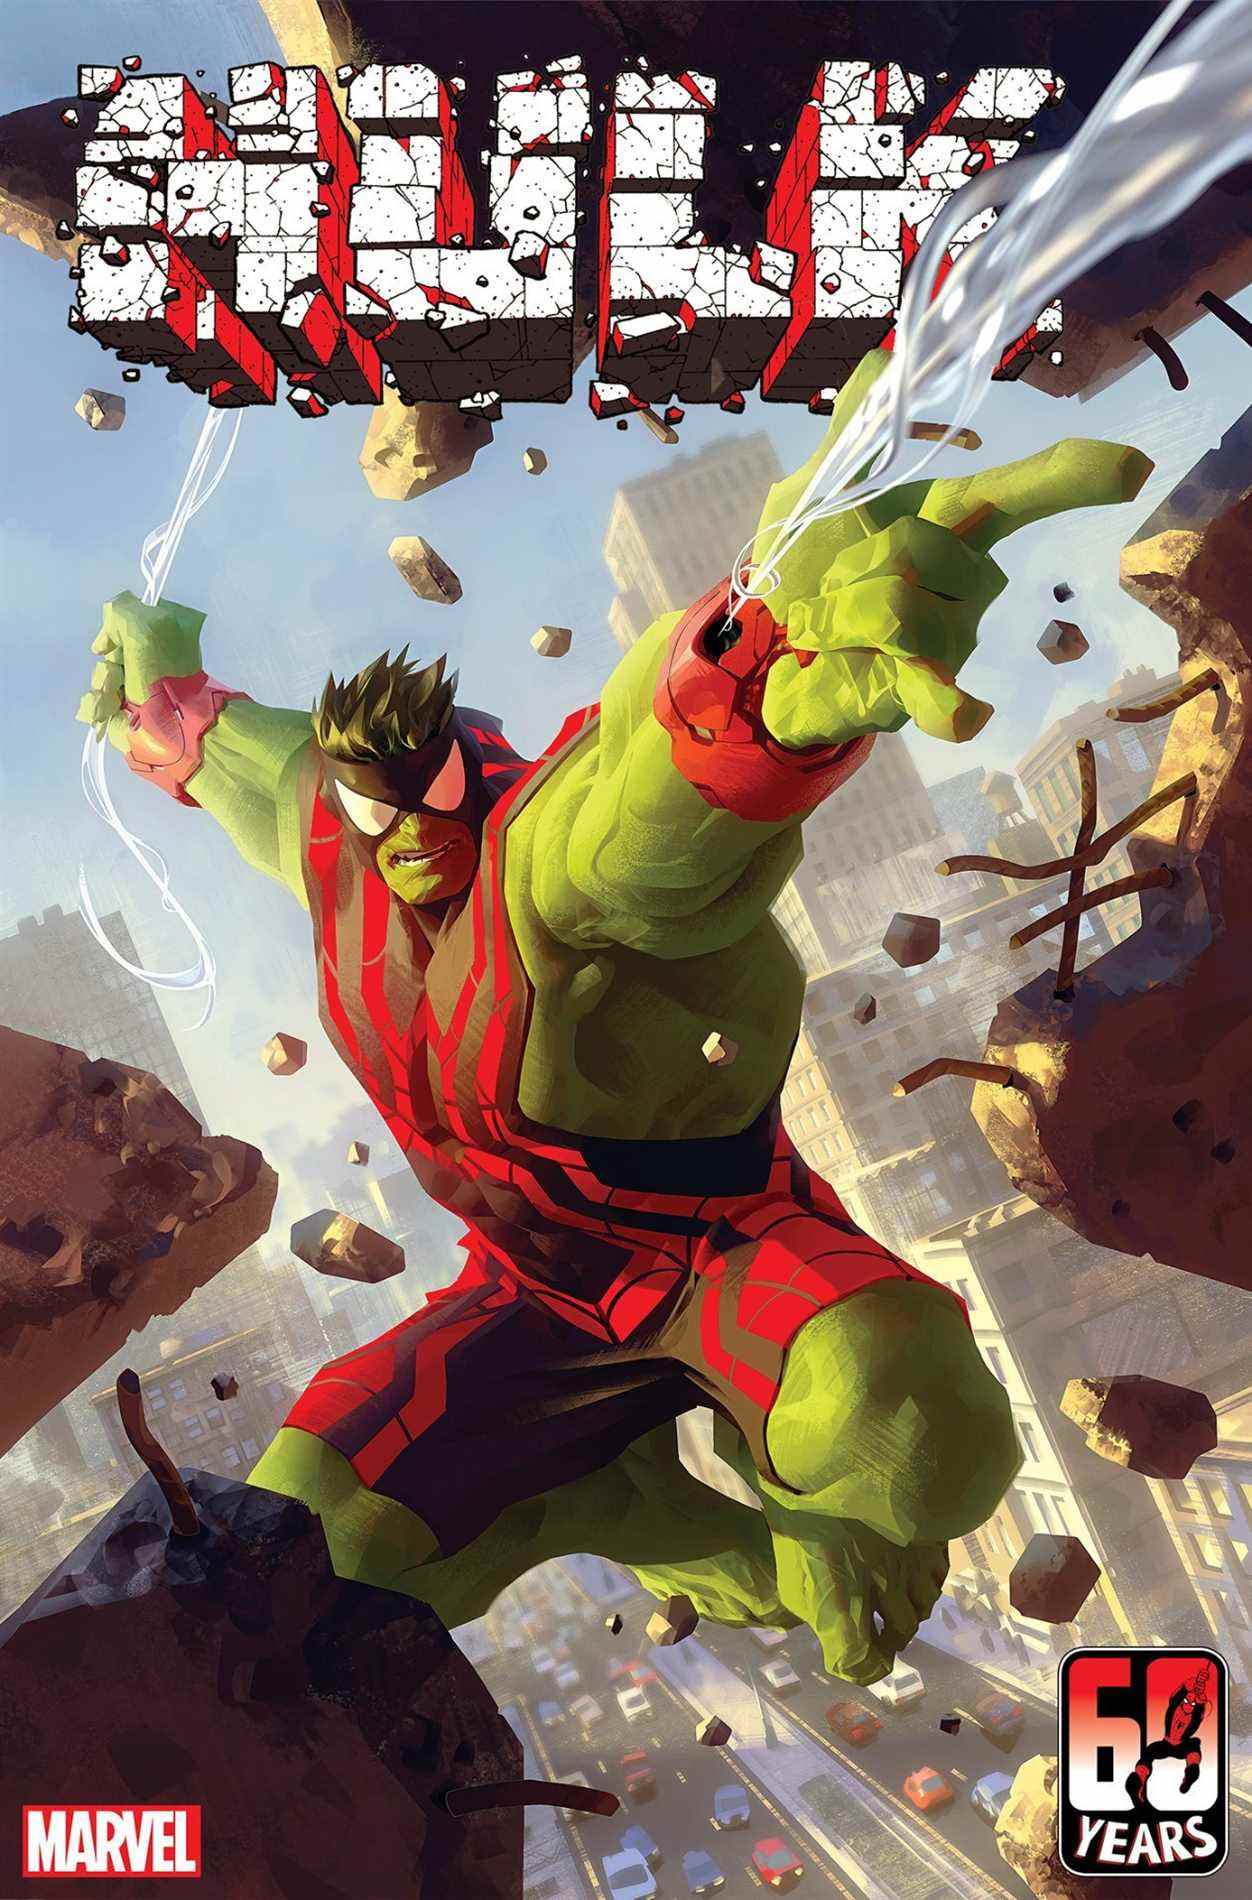 Couverture de Hulk #6